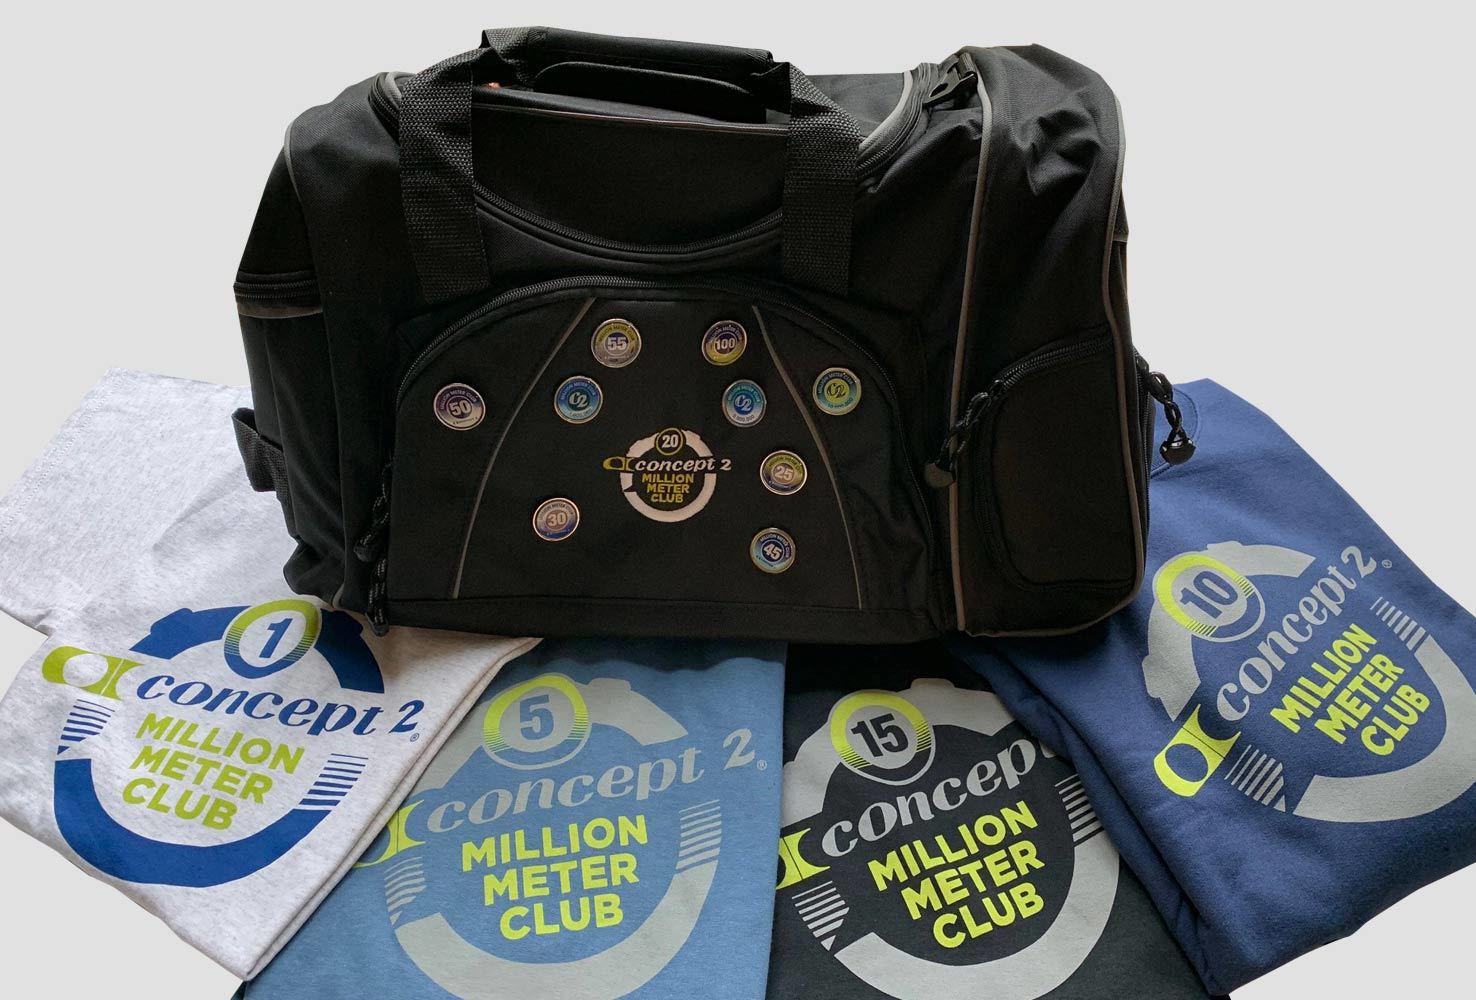 Concept2 Million meter club rewards inkluderer en bag, pins og t-skjorter underveis